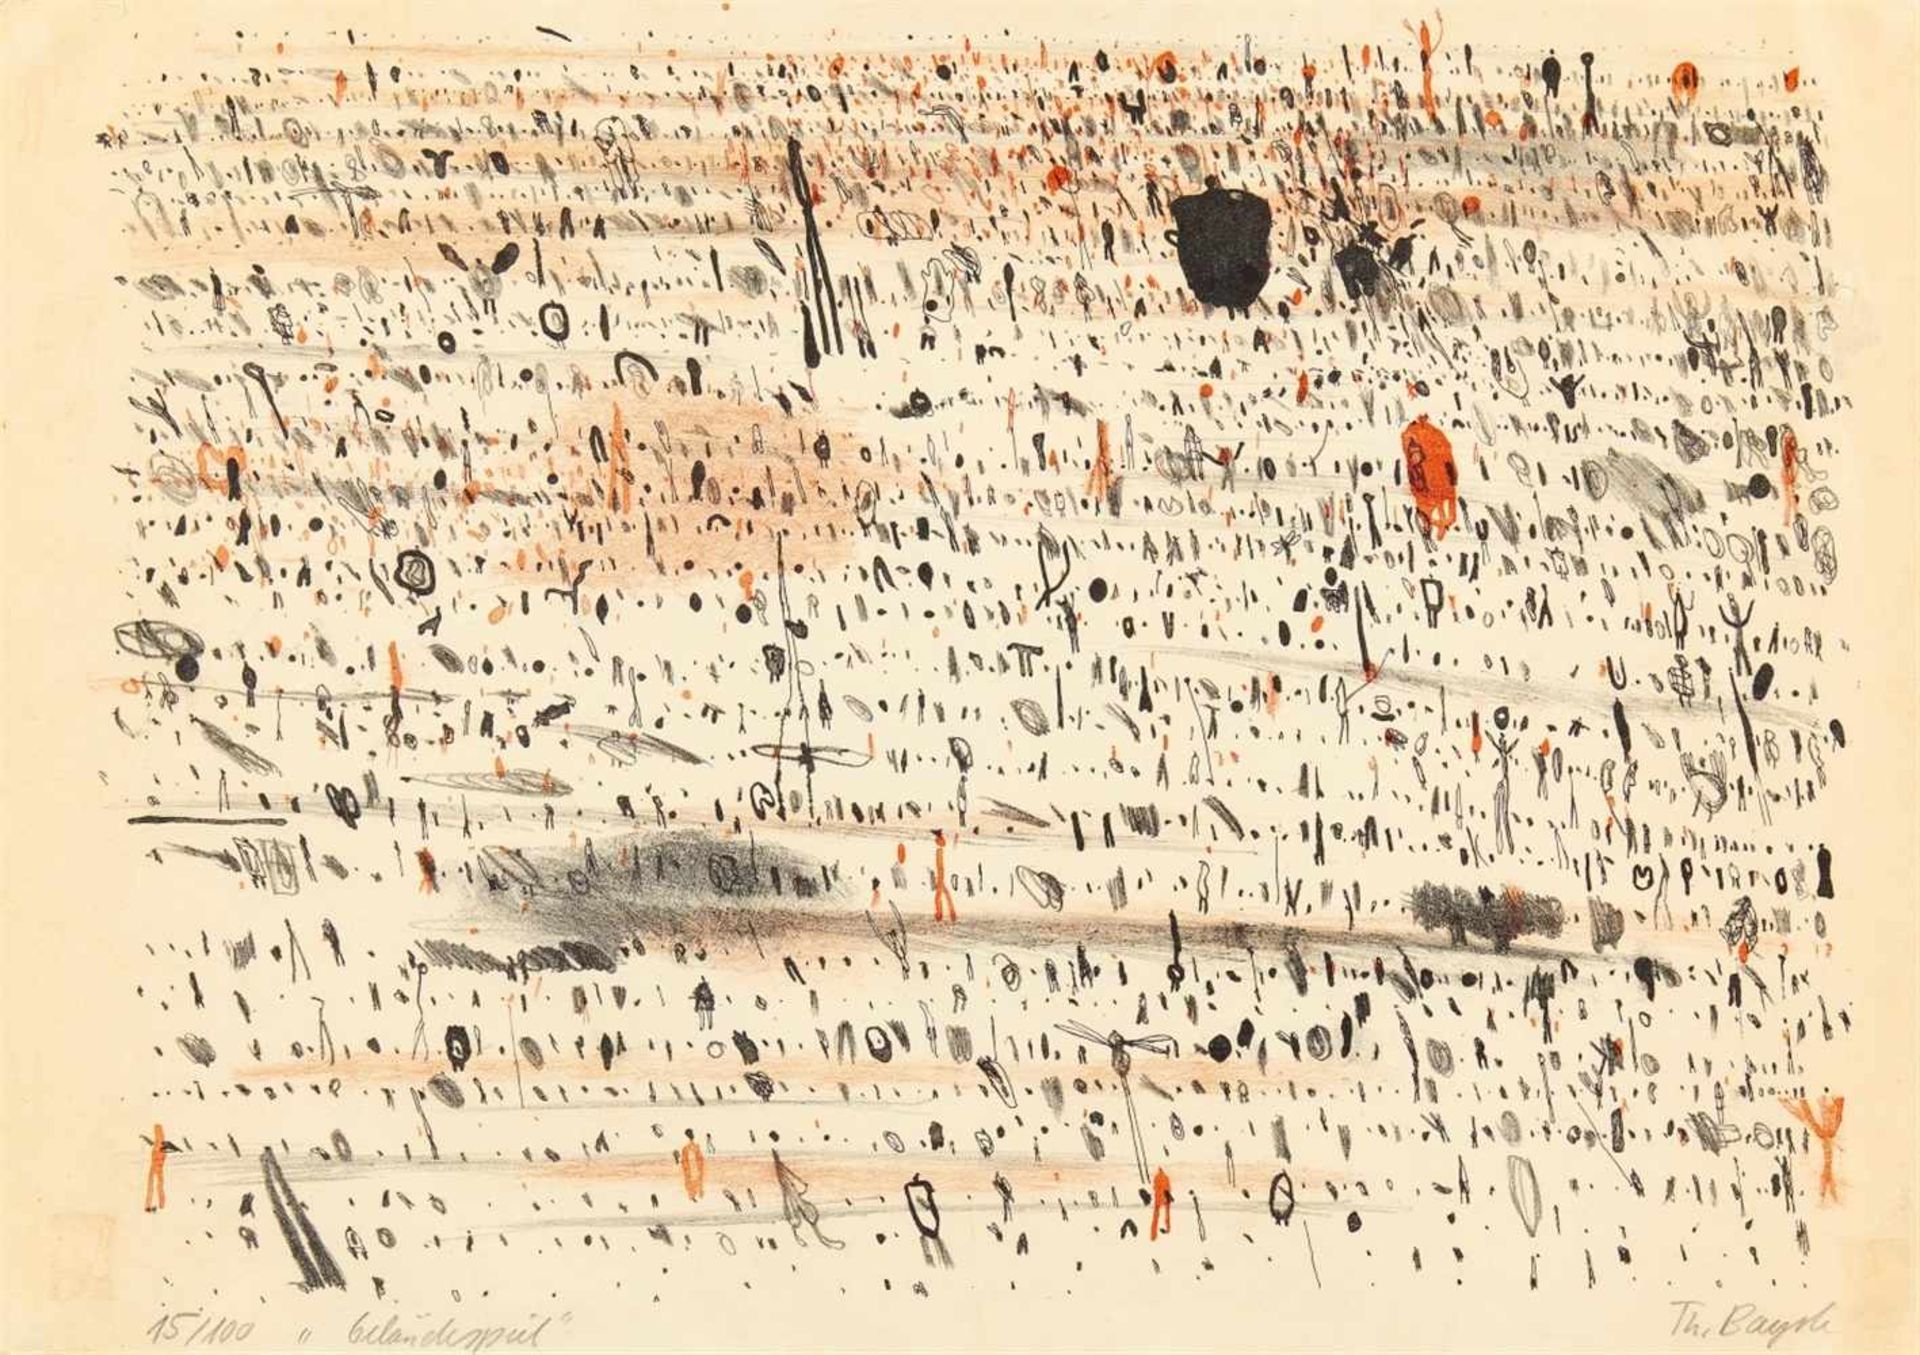 THOMAS BAYRLE 1937 GELÄNDESPIEL Farblithographie auf Velin. Signiert. Ex. 15/100. 38 x 54 cm. (